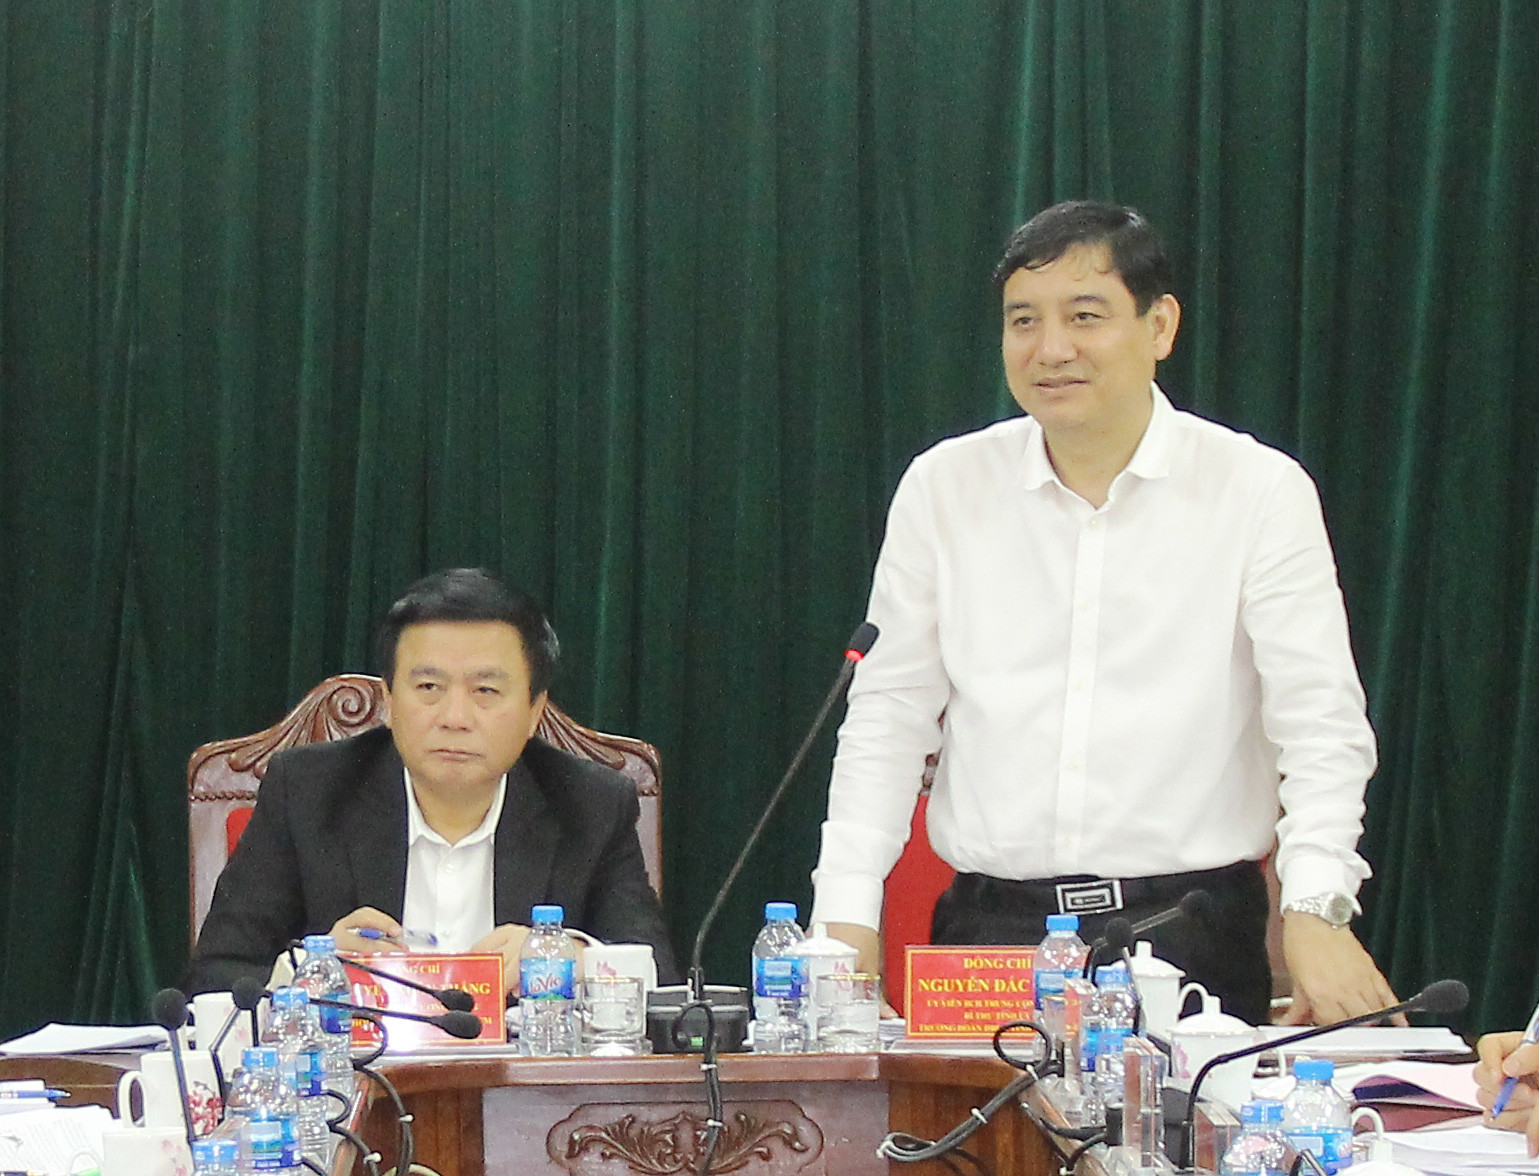 Bí thư Tỉnh ủy Nguyễn Đắc Vinh chỉ đạo tại hội nghị